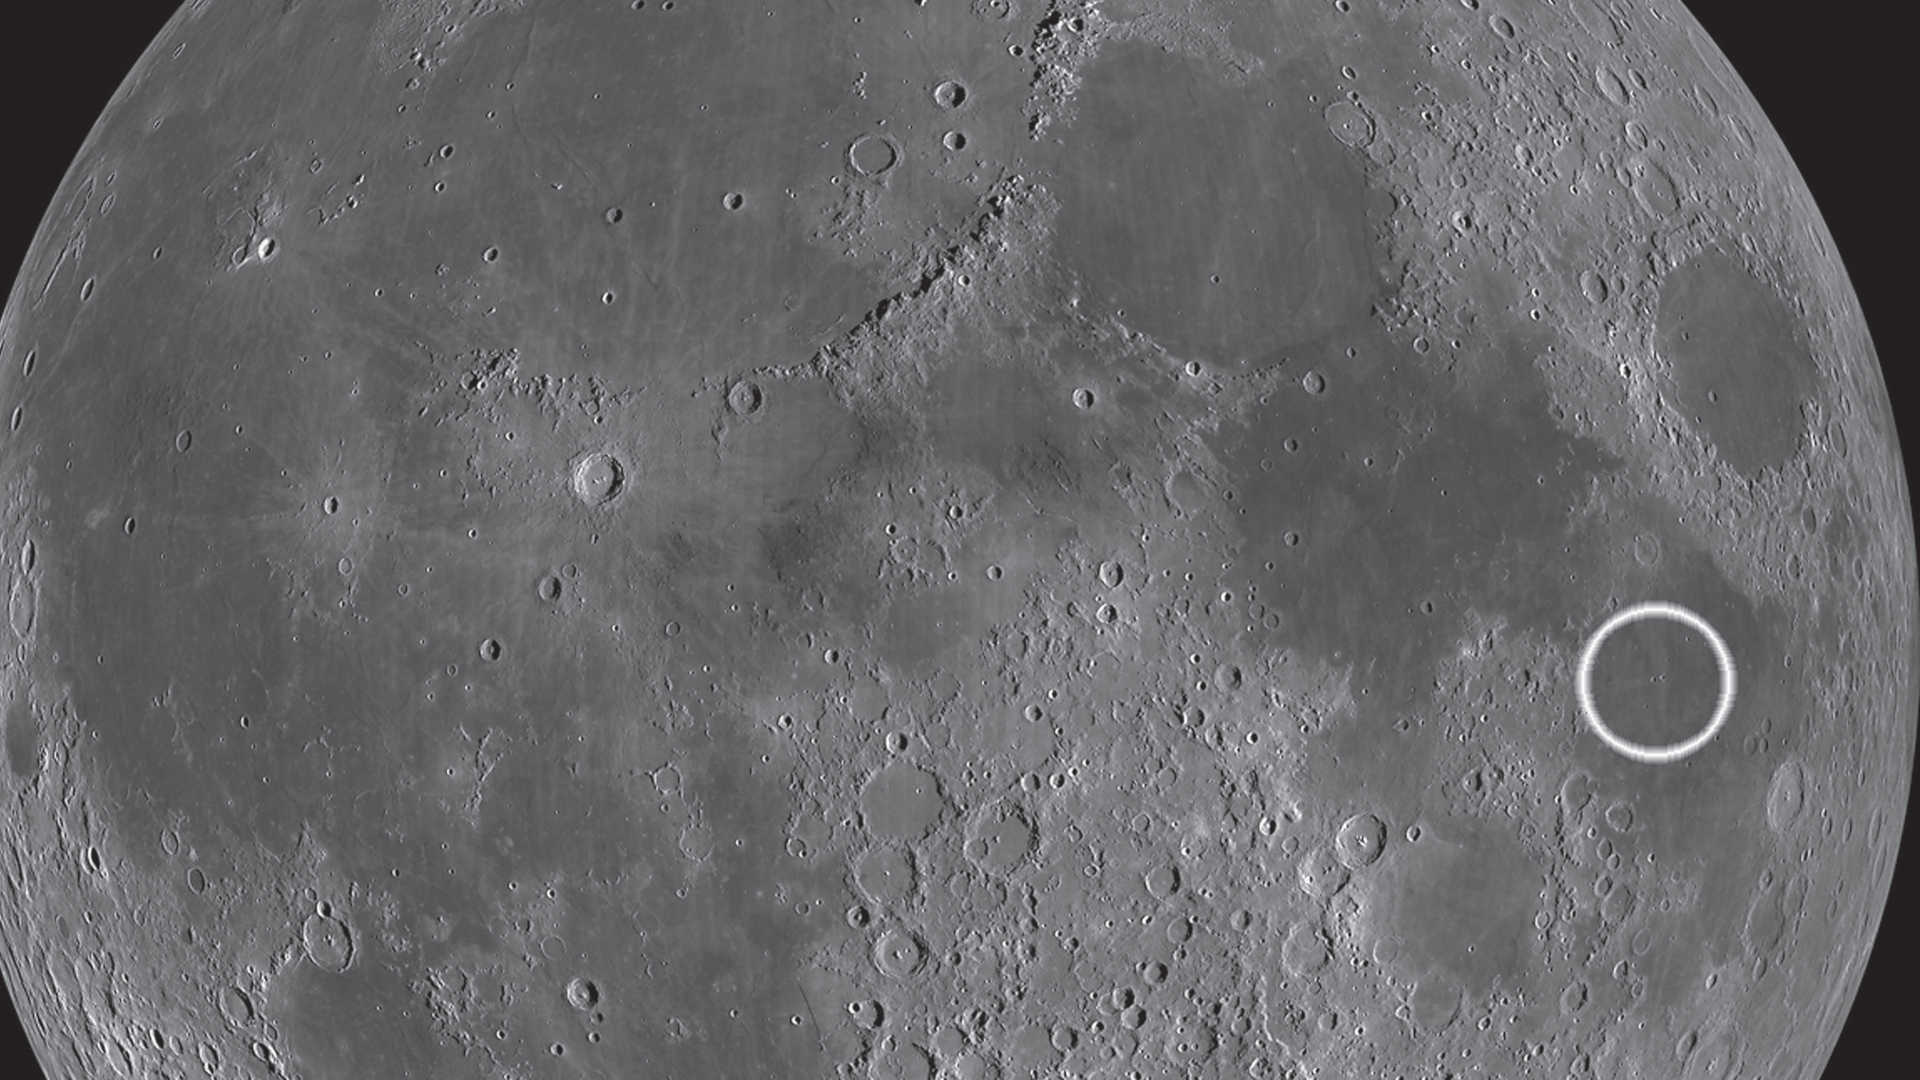 Oba kratery, Messier i Messier A, leżą niemal na środku Mare Fecunditatis. Wydłużony ślad wyrzuconej materii rozciągający się od krateru Messier A jest wyjątkowy. NASA/GSFC/Arizona State University